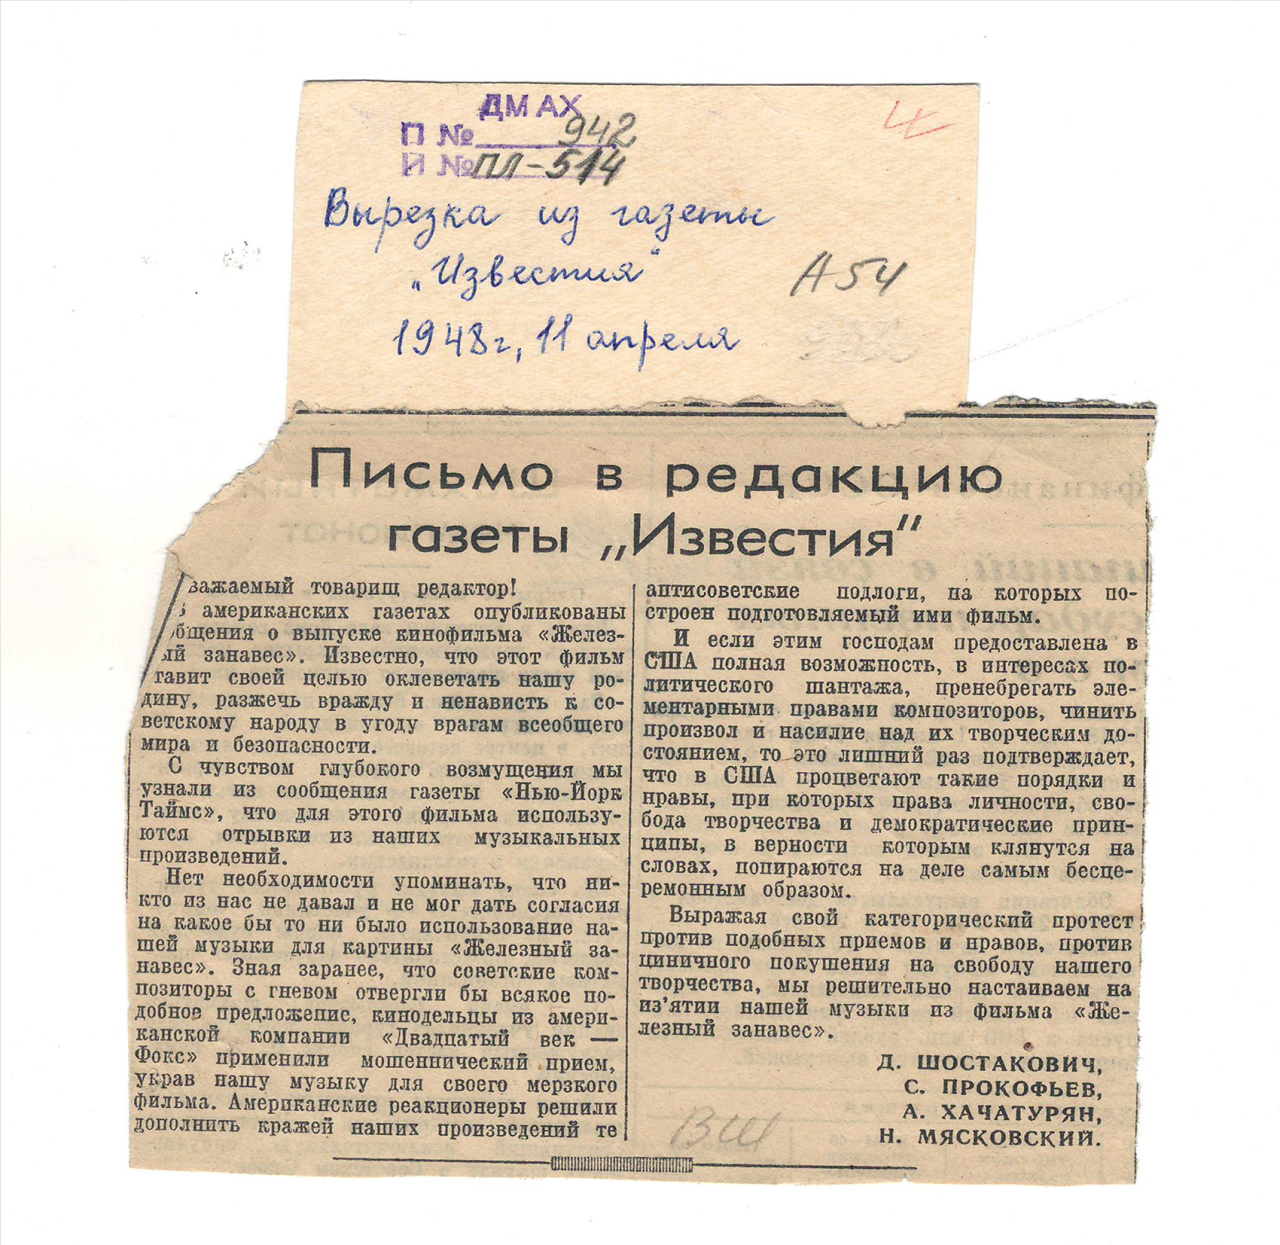 Նամակ «Известия» թերթի խմբագրությանը